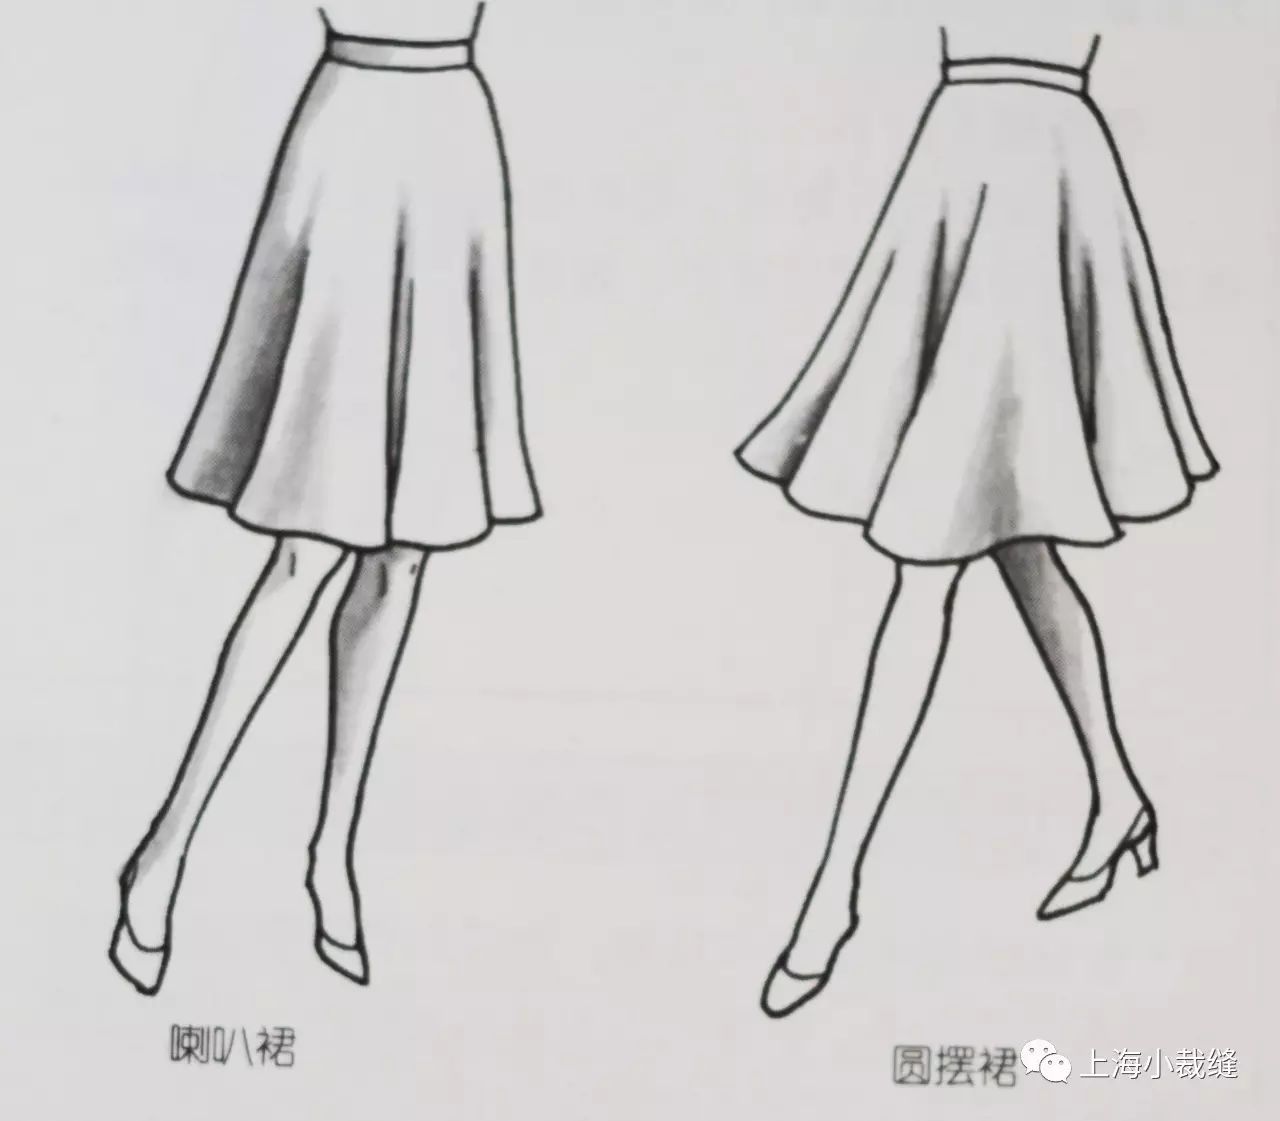 半紧身裙:与紧身裙结构款式相同,从腰部到臀部紧贴身体,下摆稍微扩展